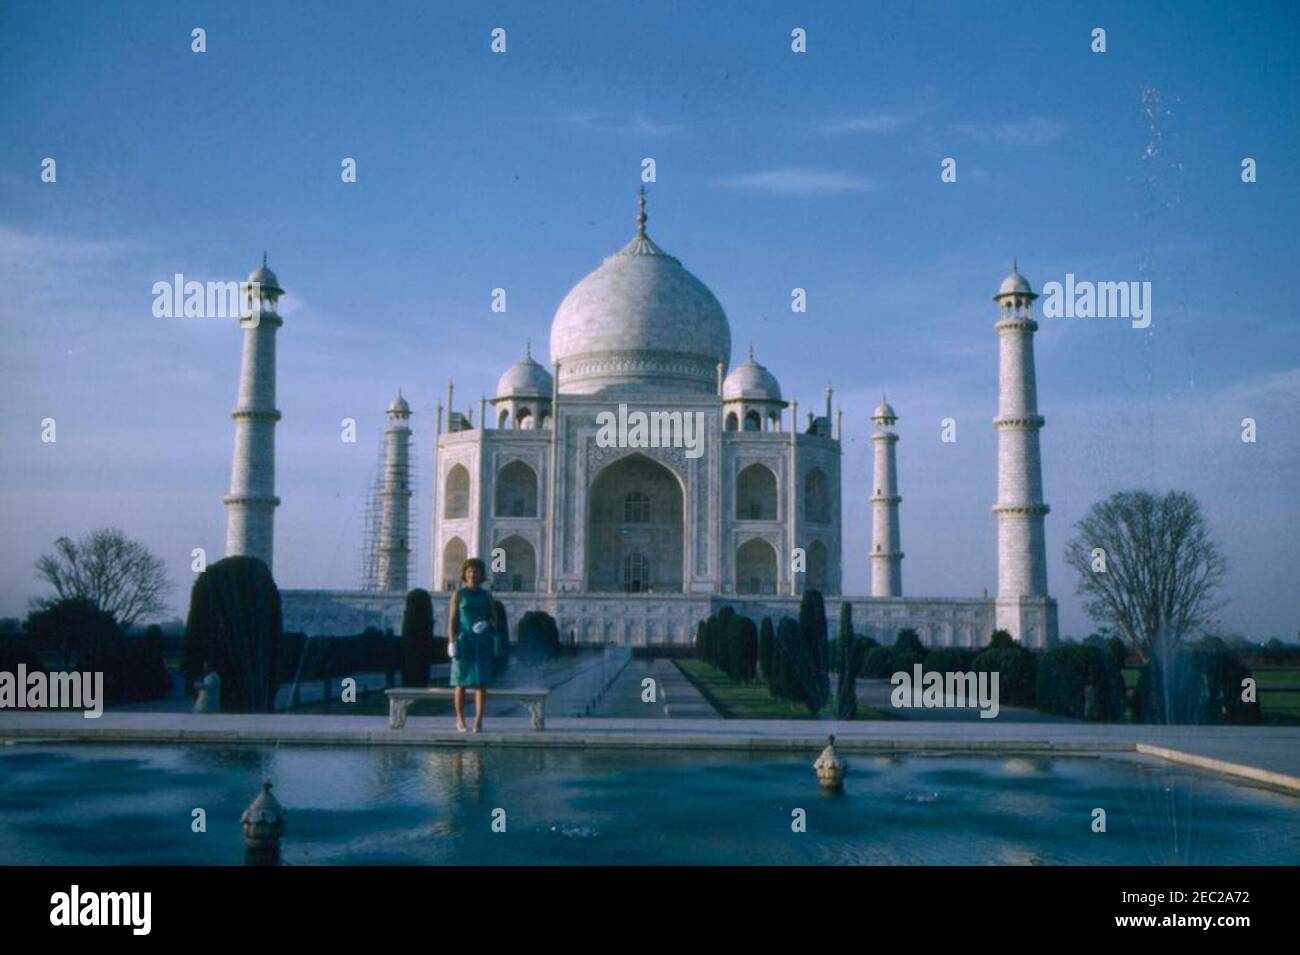 Primera Dama Jacqueline Kennedyu2019s viaje a la India y Pakistán: Agra, Uttar Pradesh, India, visita al Taj Mahal. La primera Dama Jacqueline Kennedy visita el Taj Mahal en Agra, Uttar Pradesh, India. Foto de stock